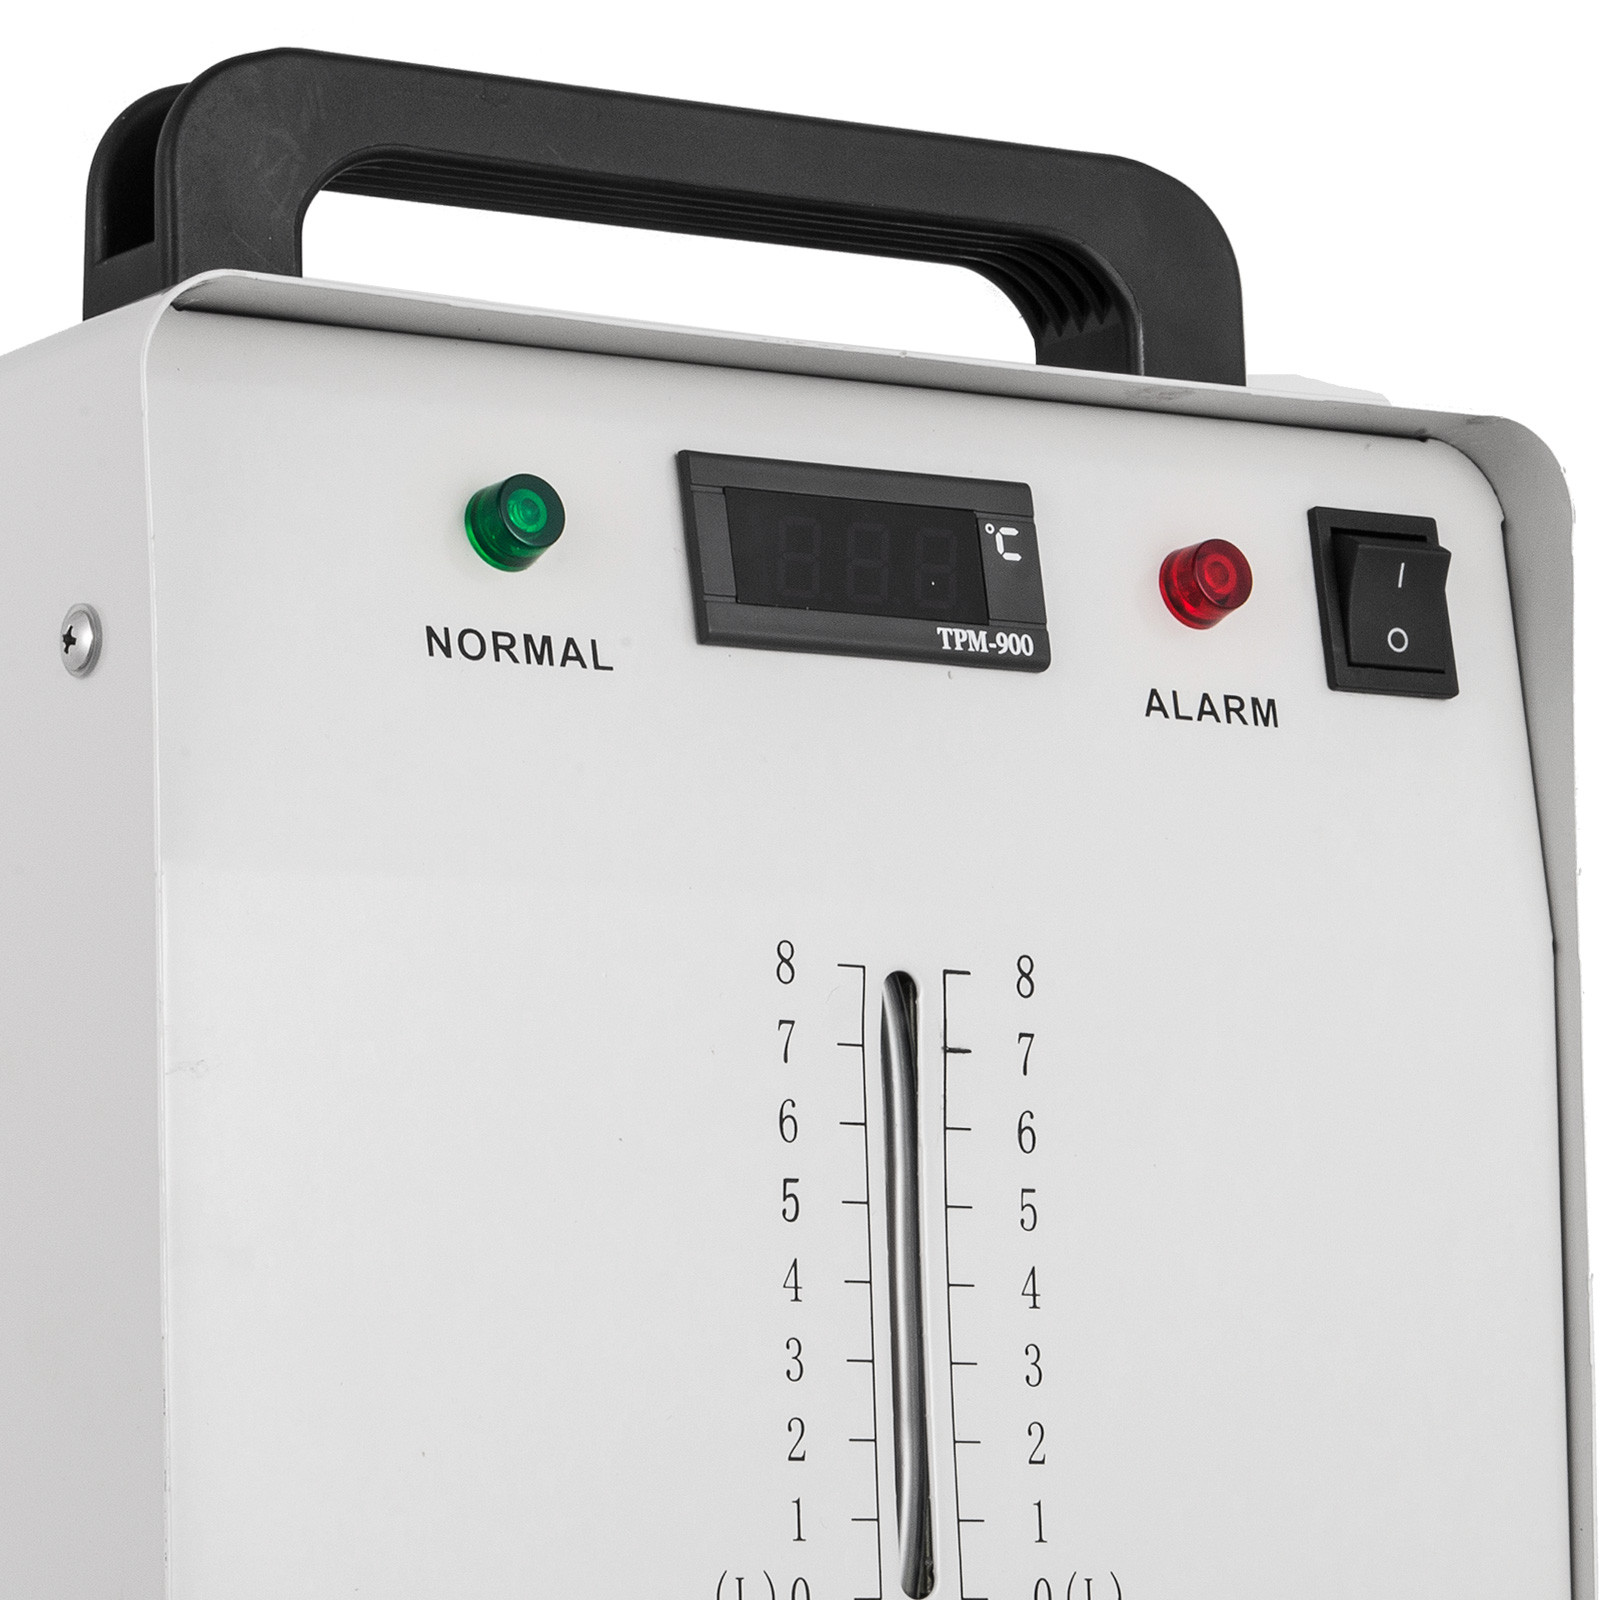 CW3000//CW5000-DG//CW5200-DG Industrieller Wasserkühler für CO2 Laser Schlauch